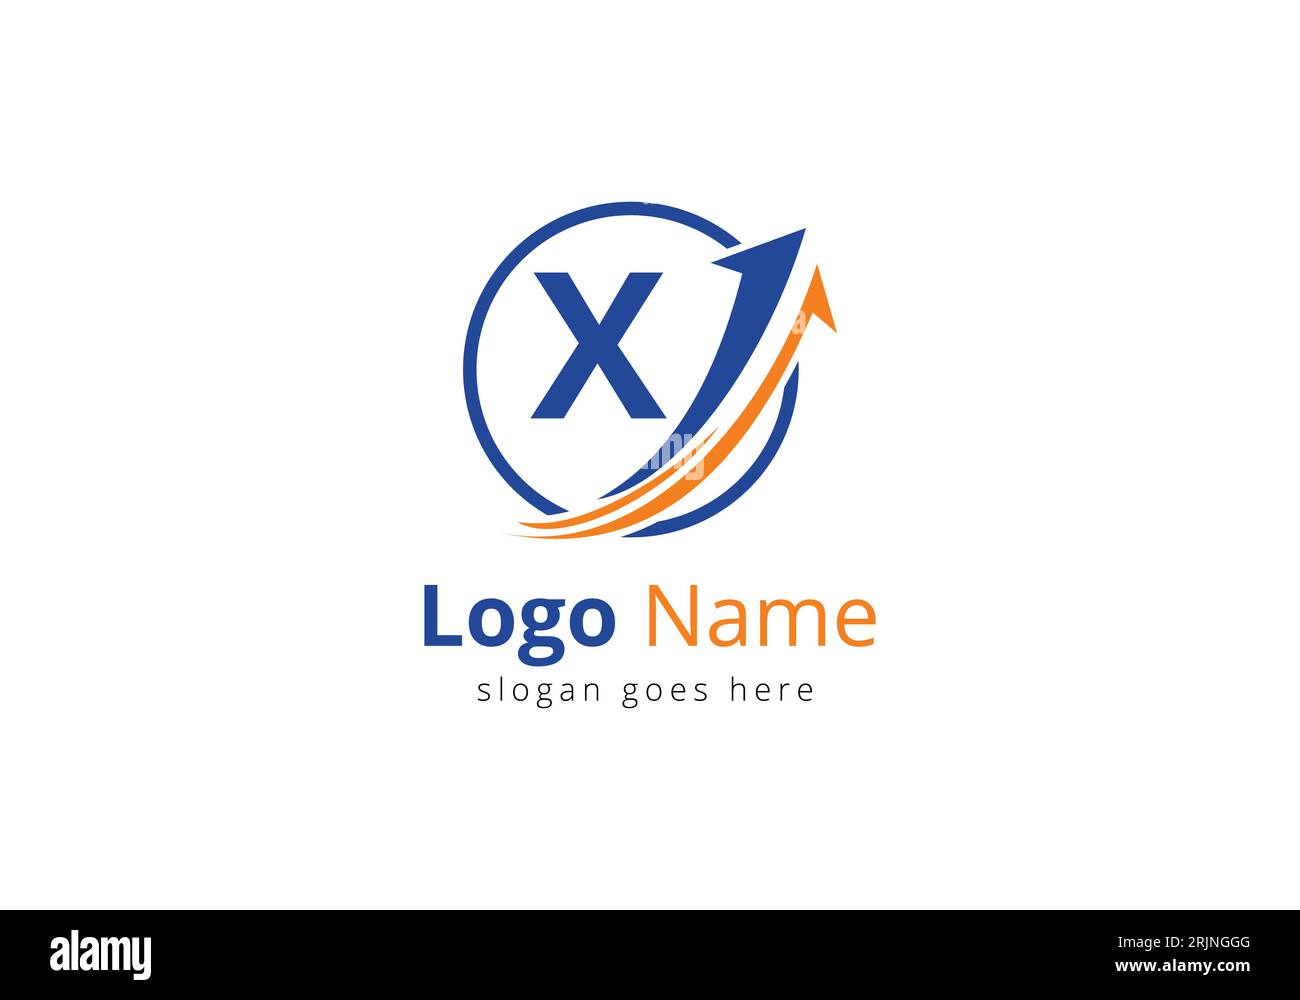 Logo Finance avec concept de lettre X. Concept de logo financier ou de réussite. Logo pour l'entreprise comptable et l'identité de l'entreprise Illustration de Vecteur